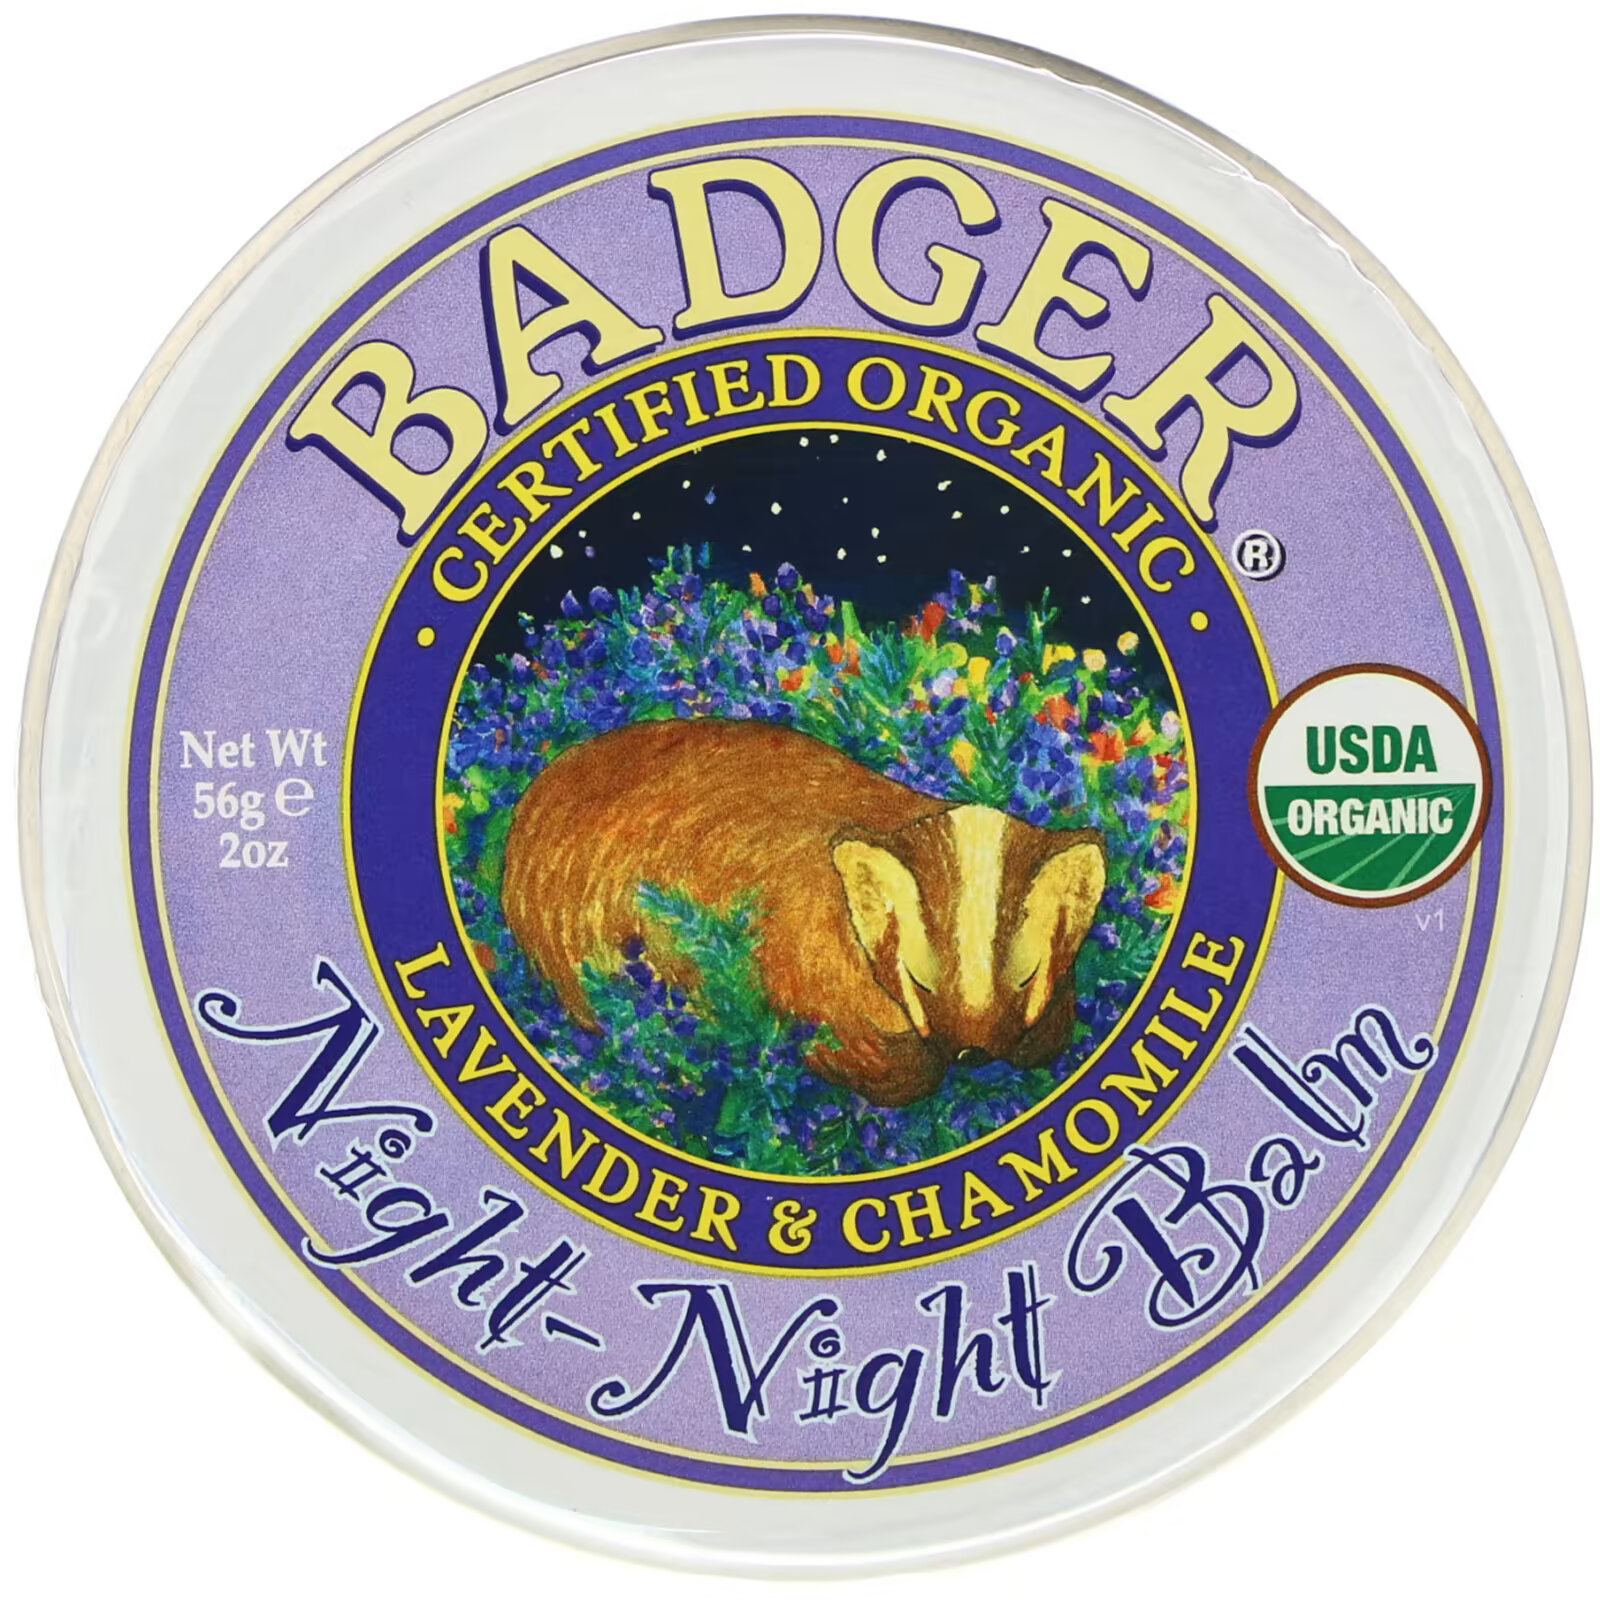 Badger Company, Organic, бальзам ночь-ночь, лаванда и ромашка, 2 унции (56 г)